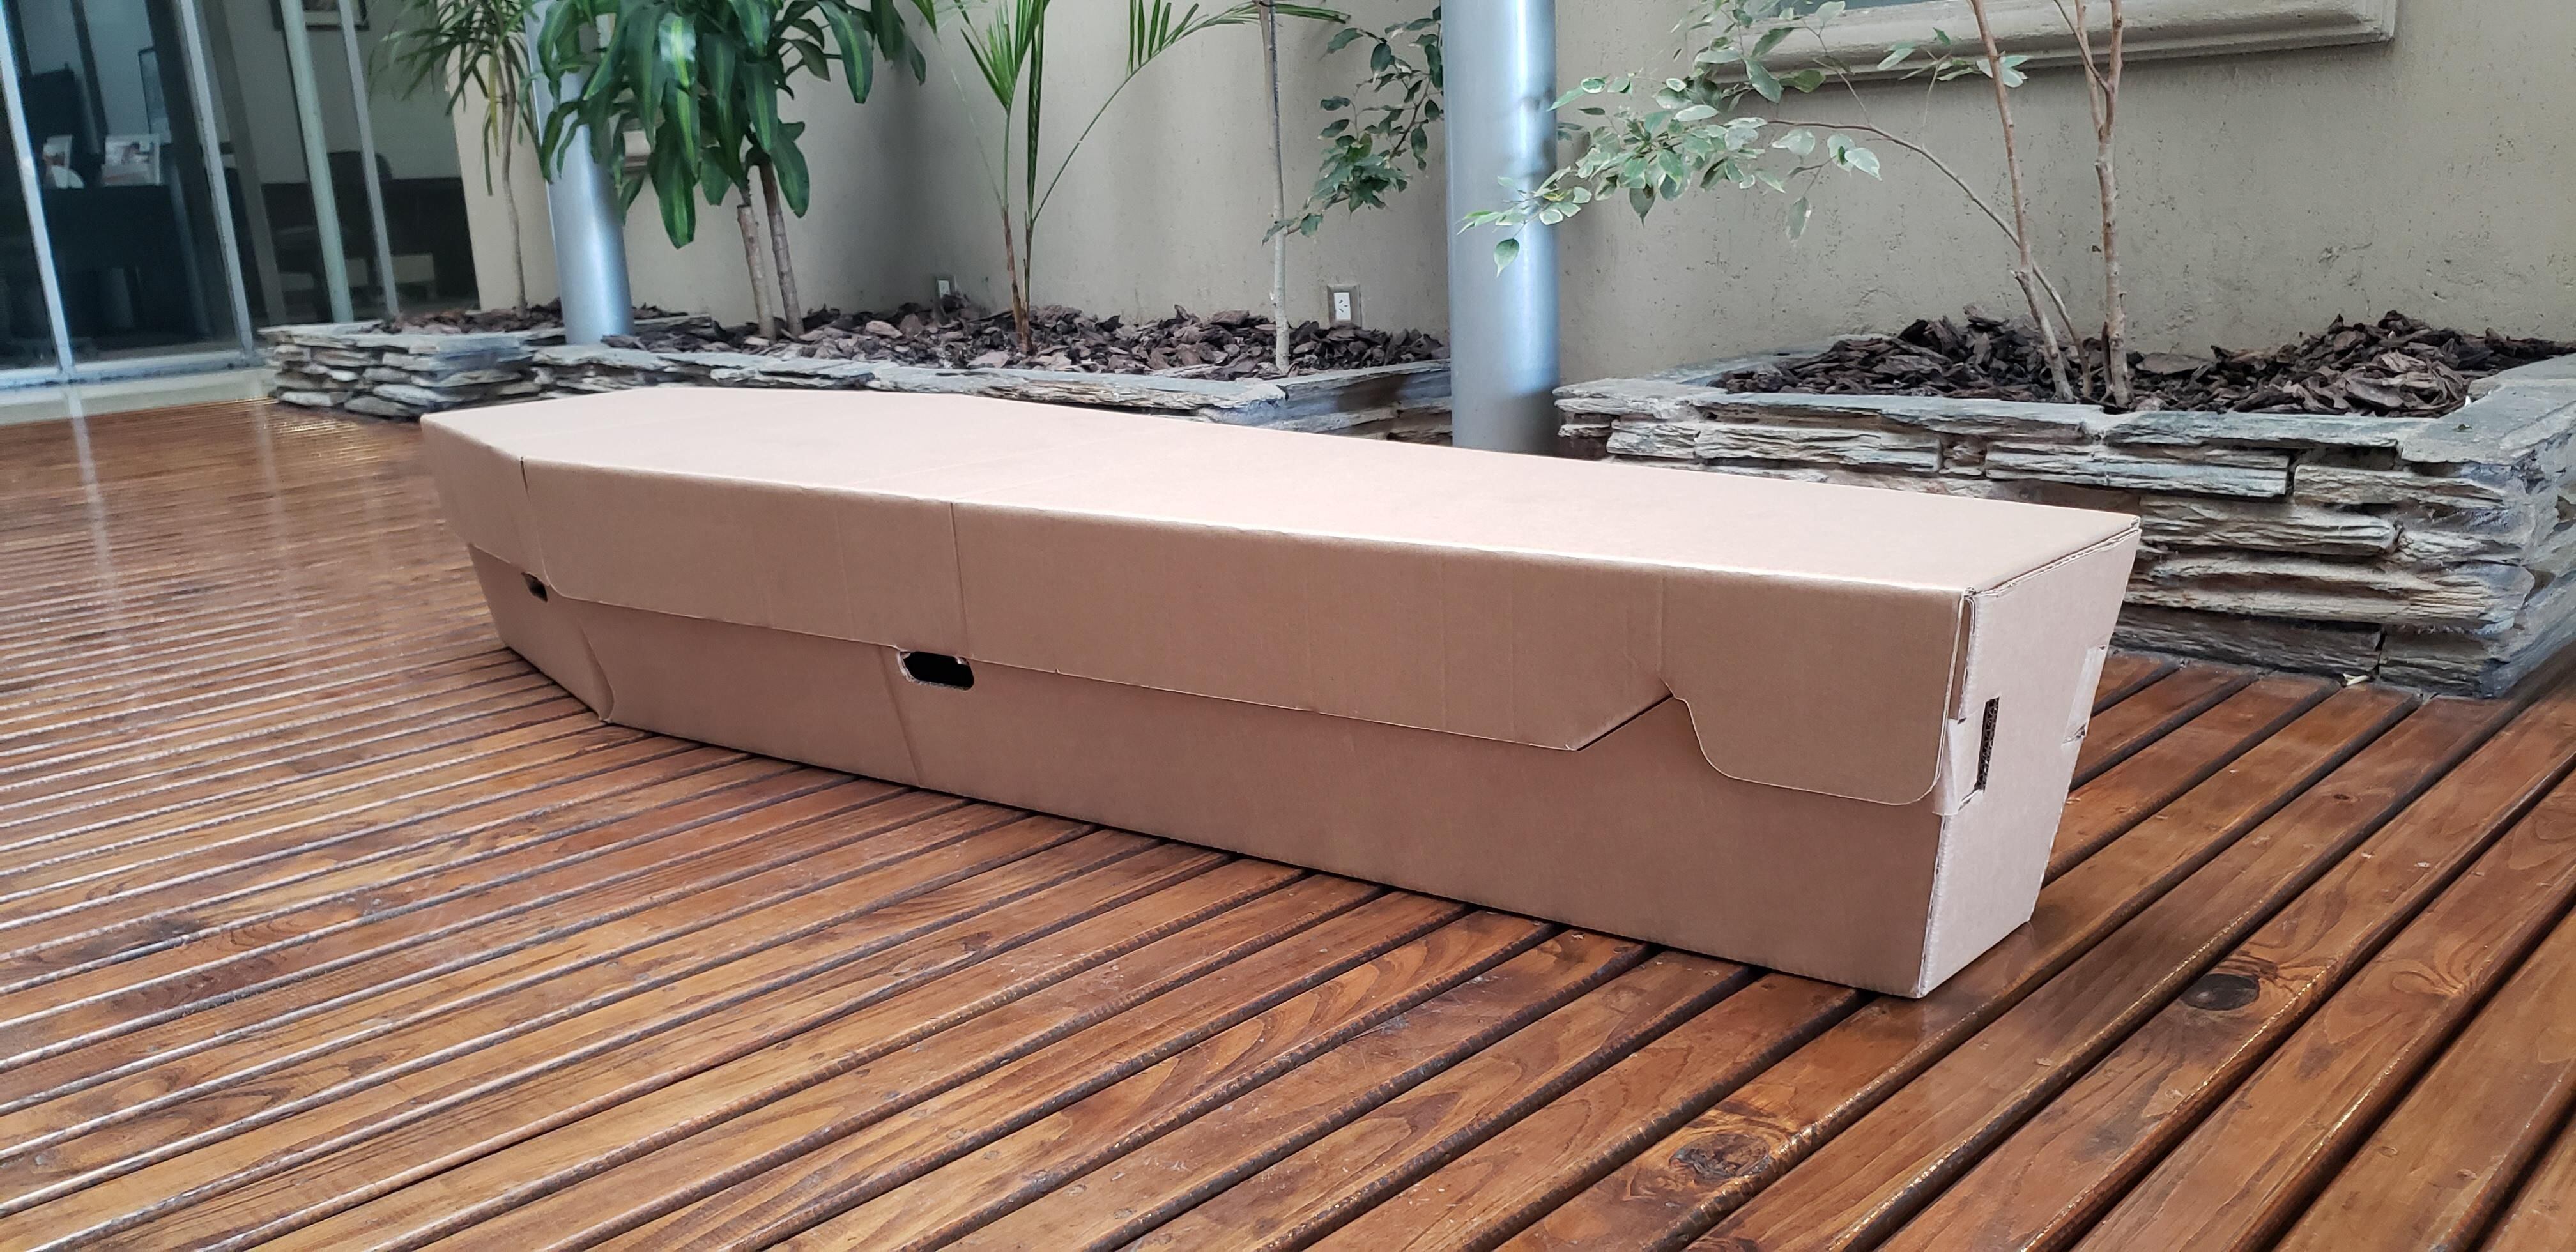 Modelo de caixão de papelão da empresa argentina Restbox. 